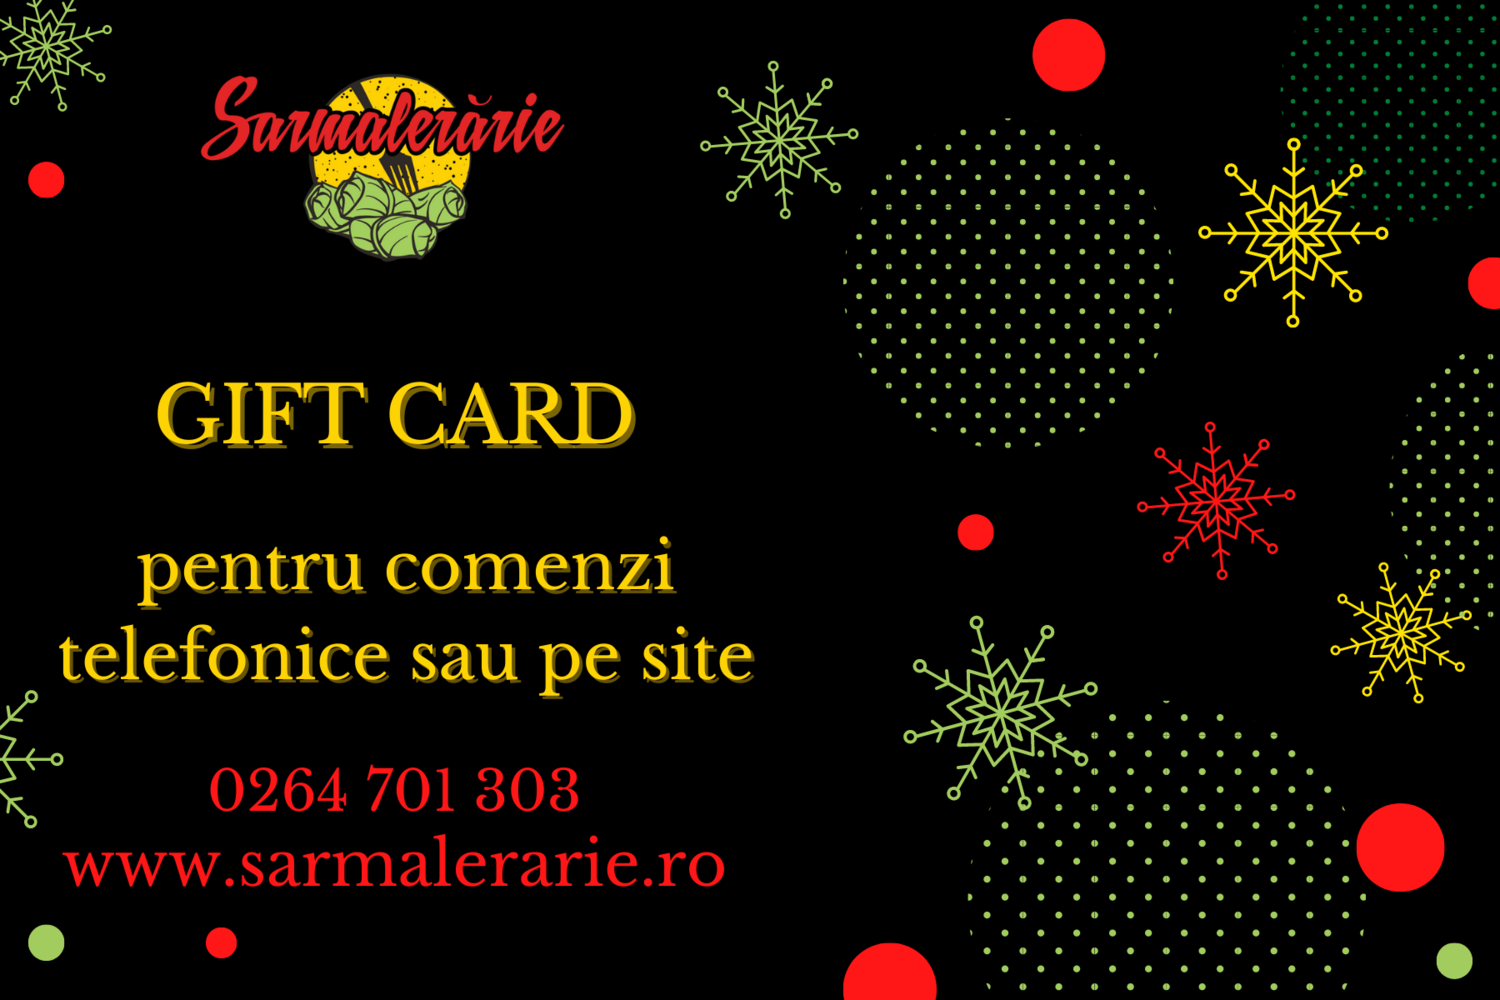 Gift card
25/50/100/150 lei